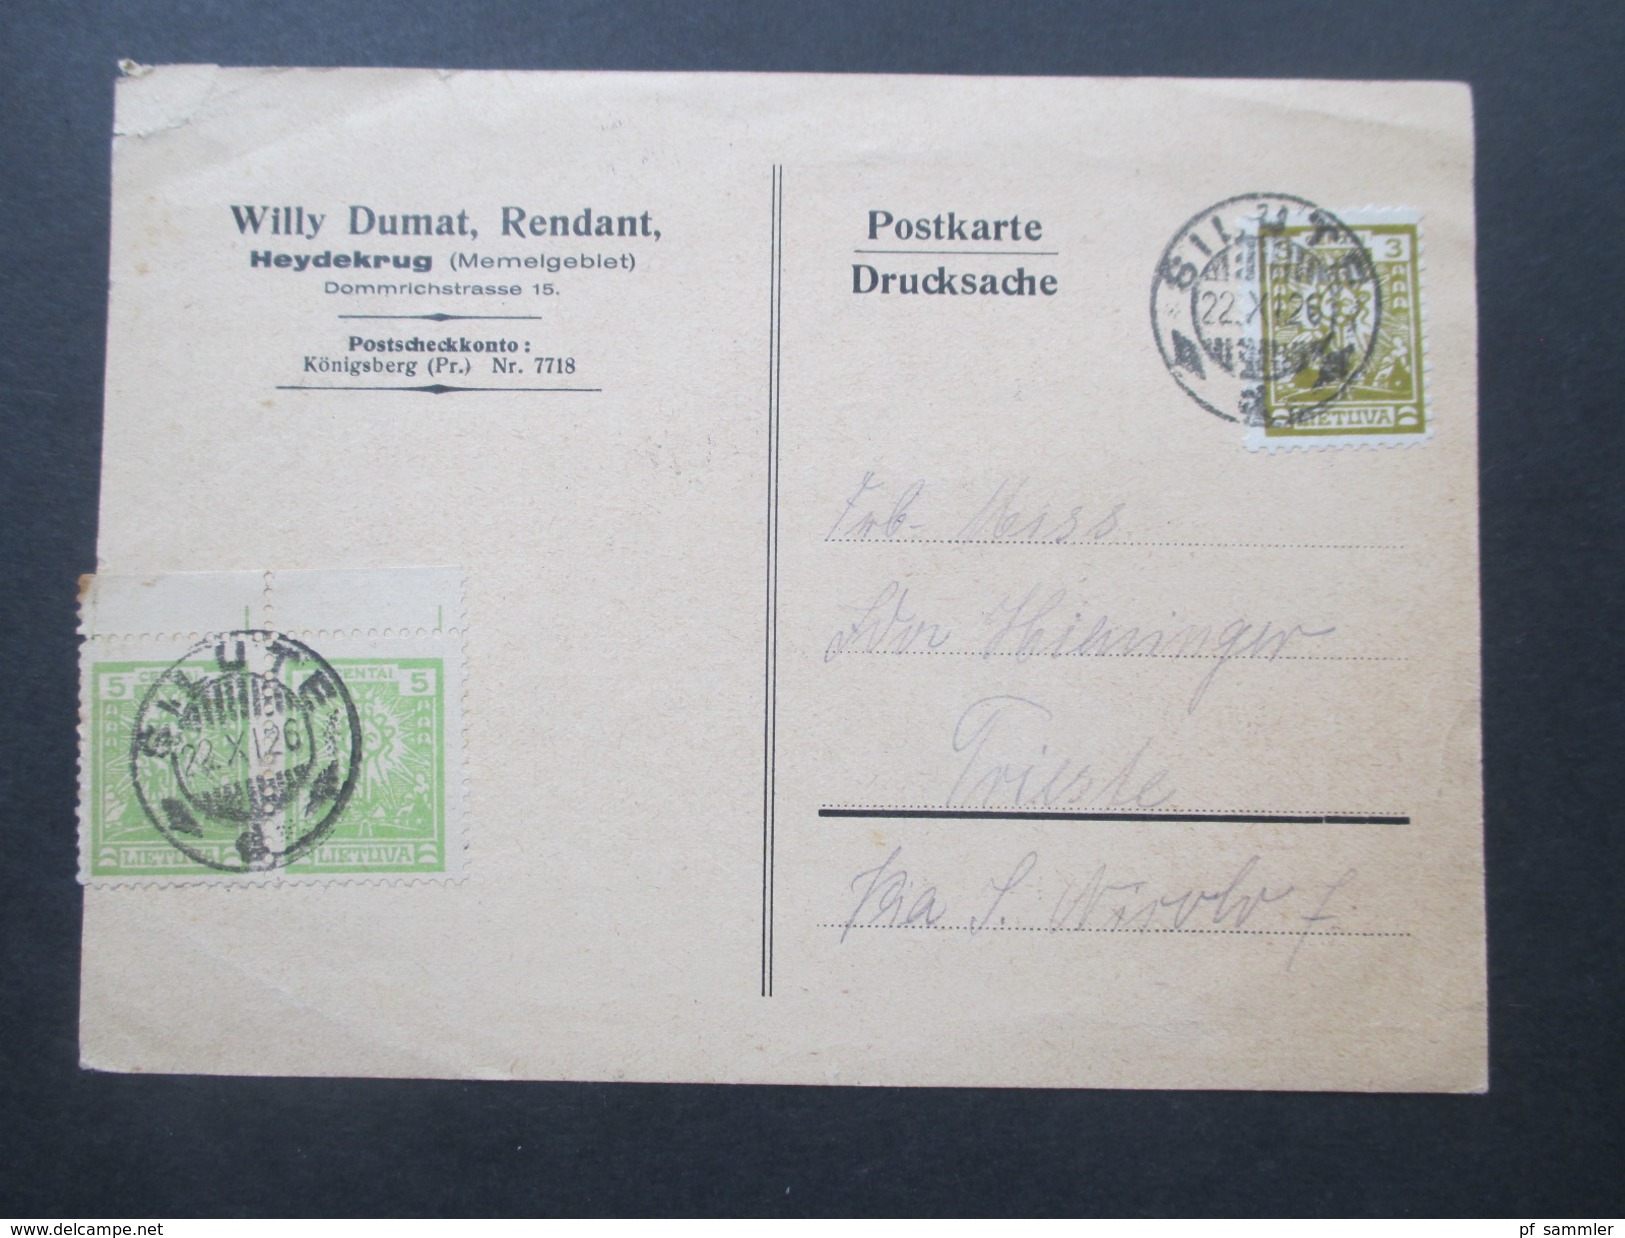 Deutsches Reich Memelgebiet 1926 Postkarte Silute. Willy Dumat, Rendant. Heydekrug. Briefmarkenhändler. Nach Trieste - Klaipeda 1923